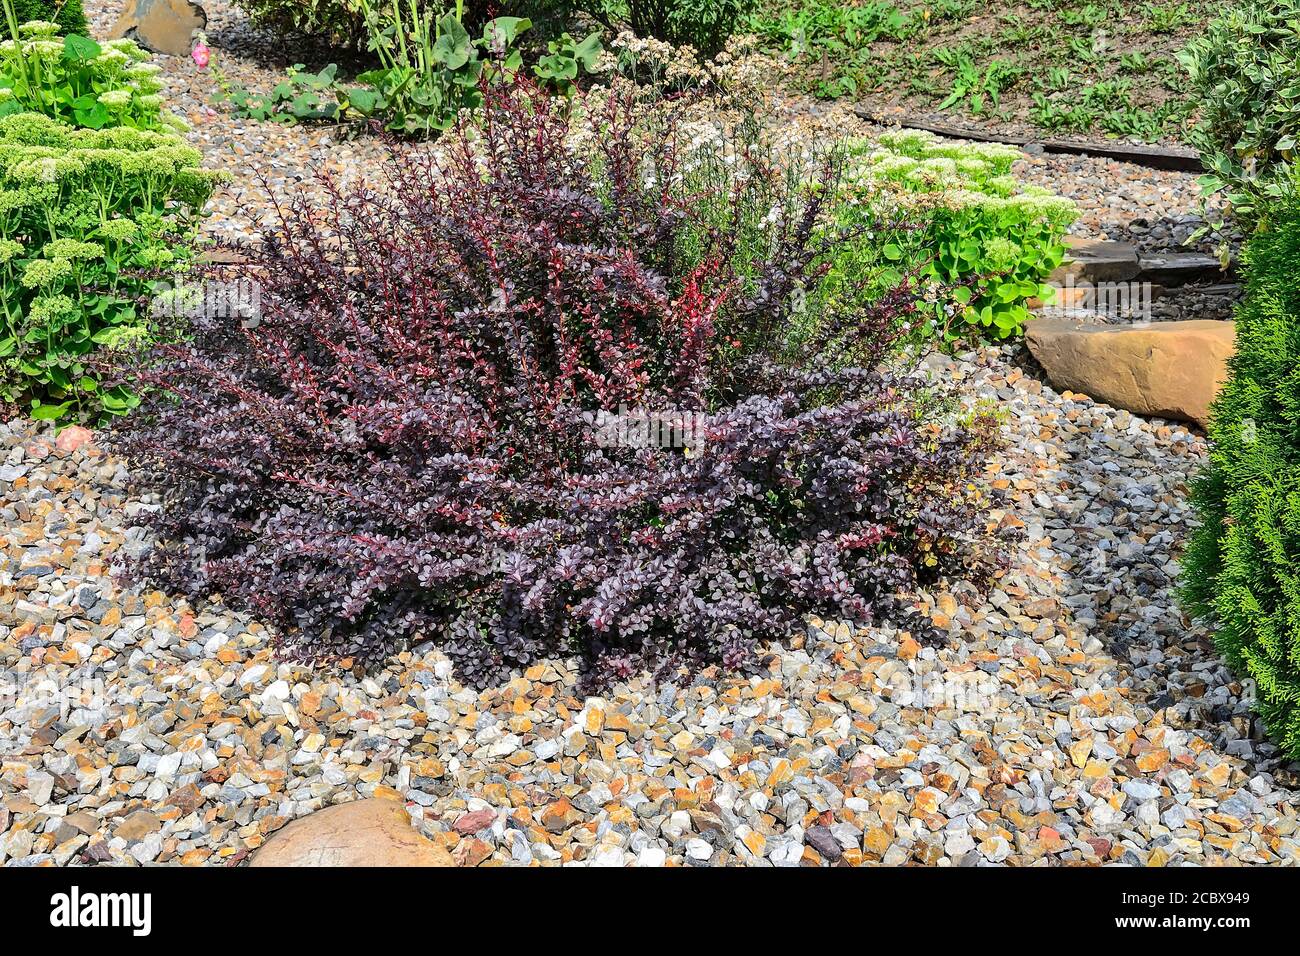 Es Bush von Berberis thunbergii atropurpurea, Atropurpurea Nana - dekorative Pflanze für Garten- und Landschaftsgestaltung mit lila und rote Blätter und Stockfoto